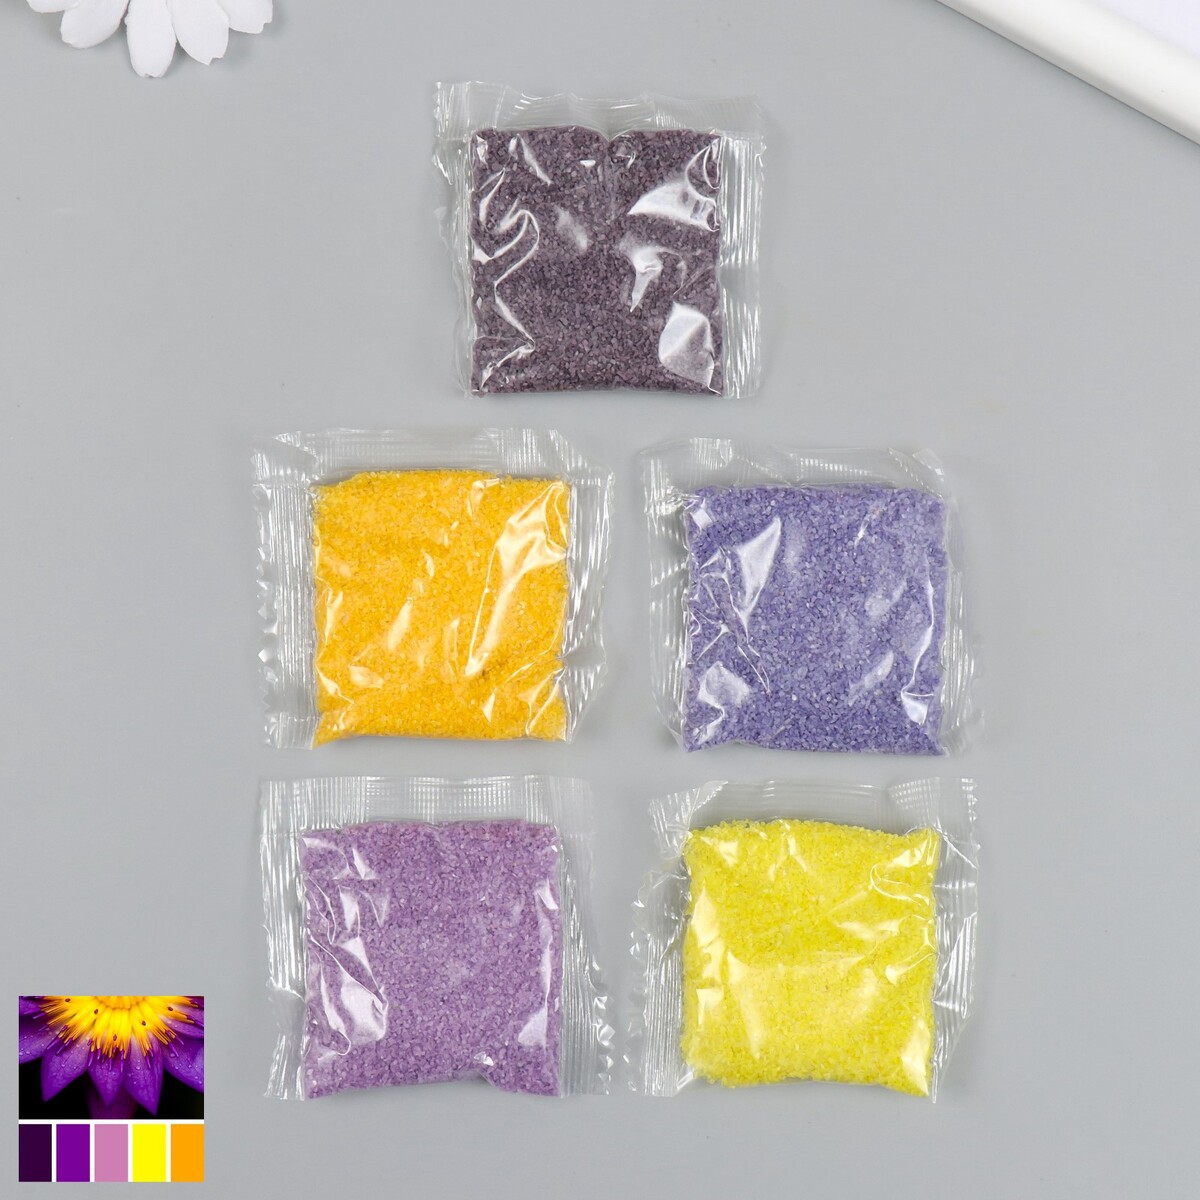 Набор цветного песка №1, 5 цветов, по 20 гр набор игровой для песка battat в фиолетовой сумке 68704